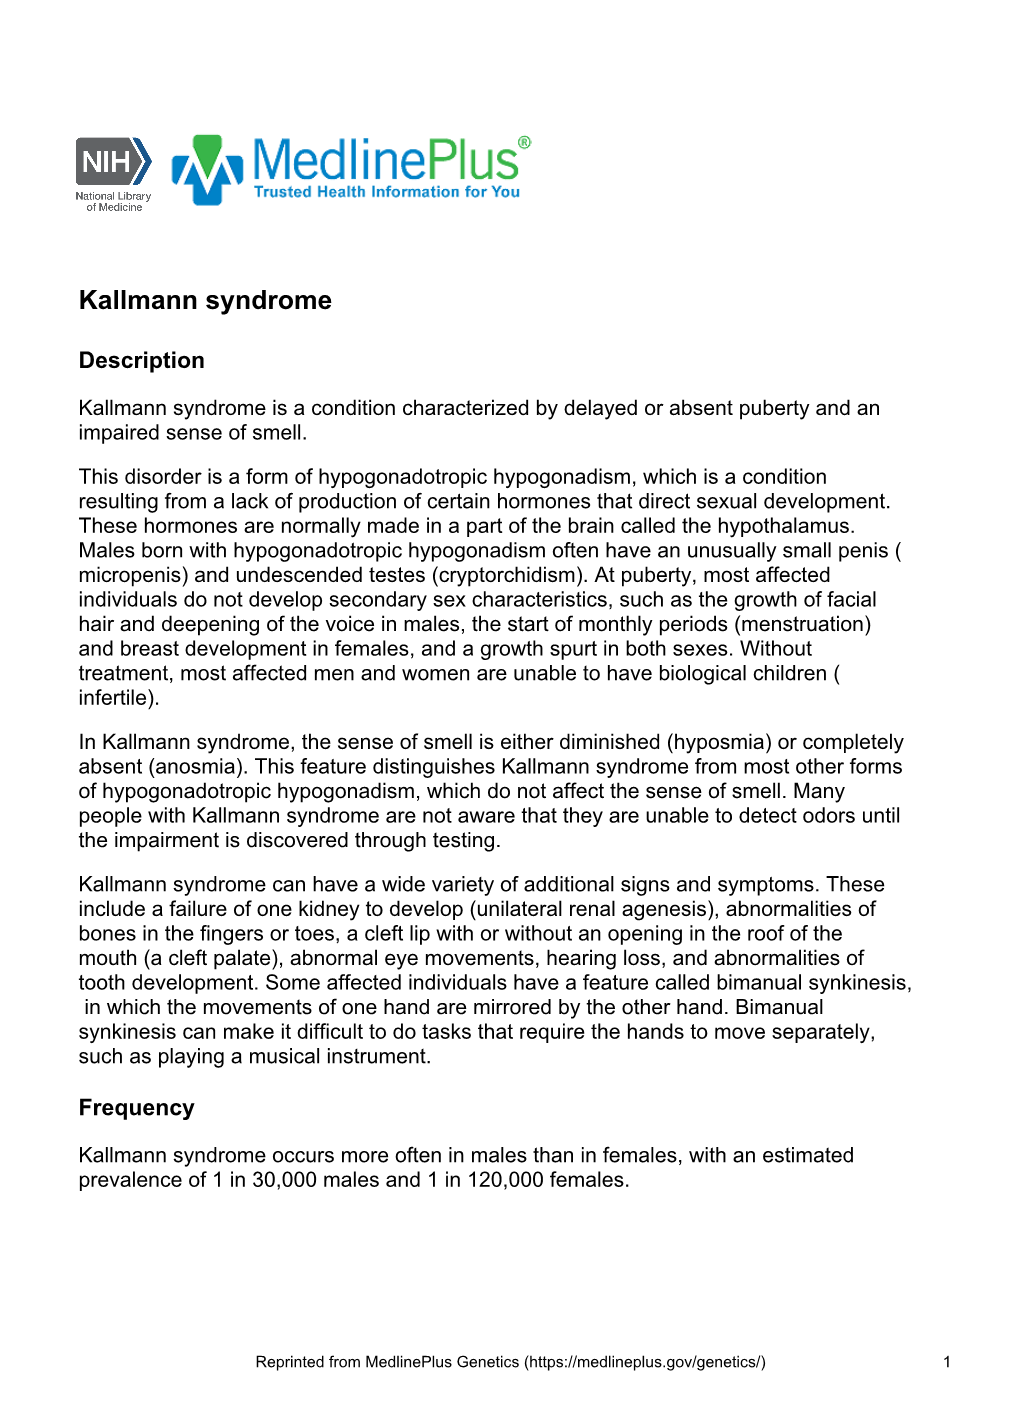 Kallmann Syndrome